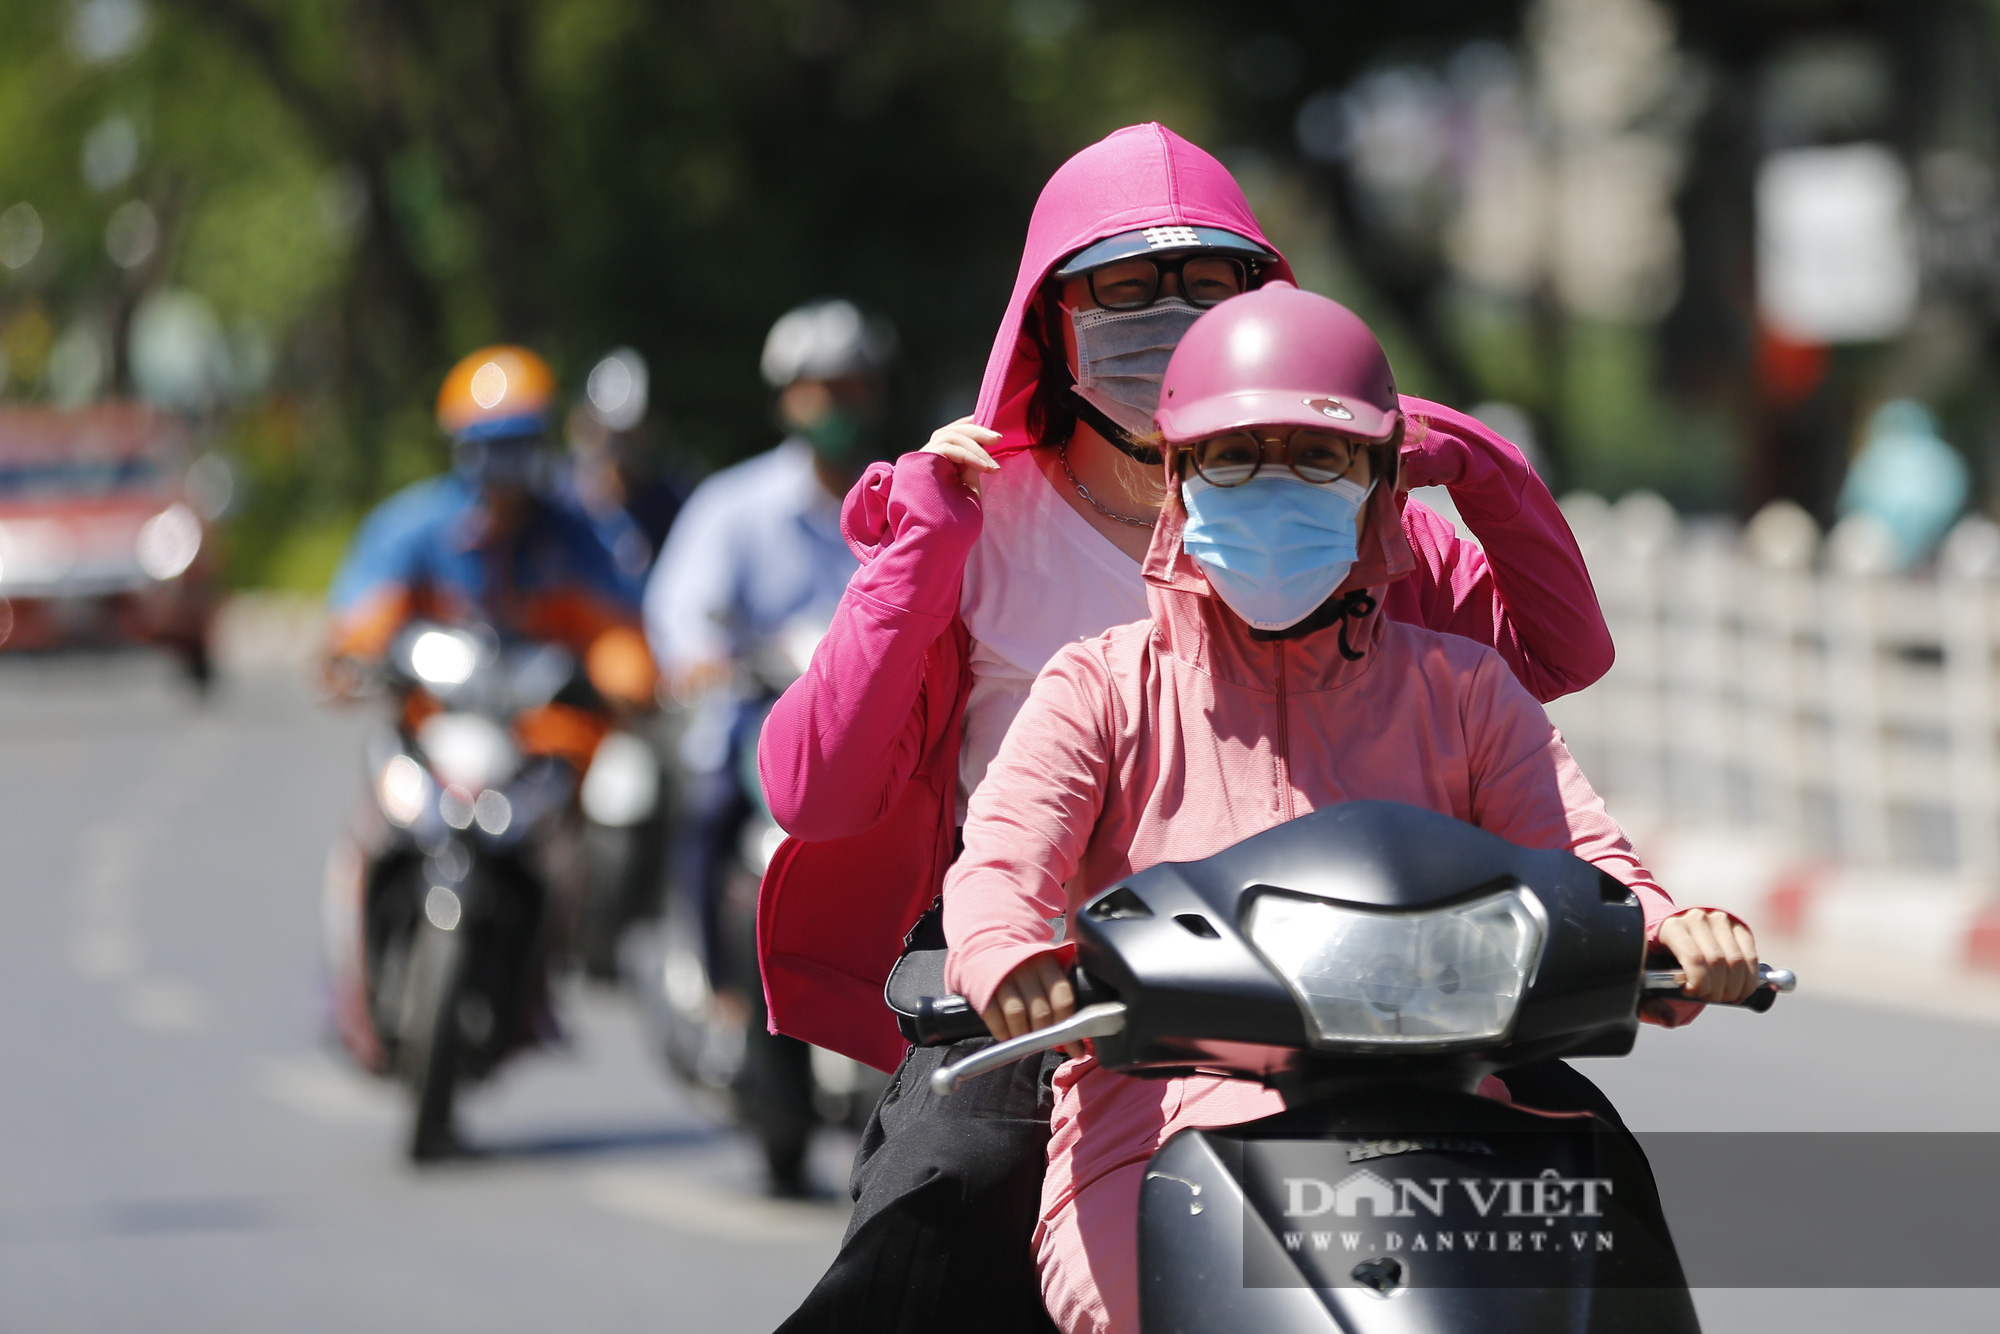 Nhiệt độ thực tế ngoài trời tại 5 quận nội thành Hà Nội là bao nhiêu? - Ảnh 6.